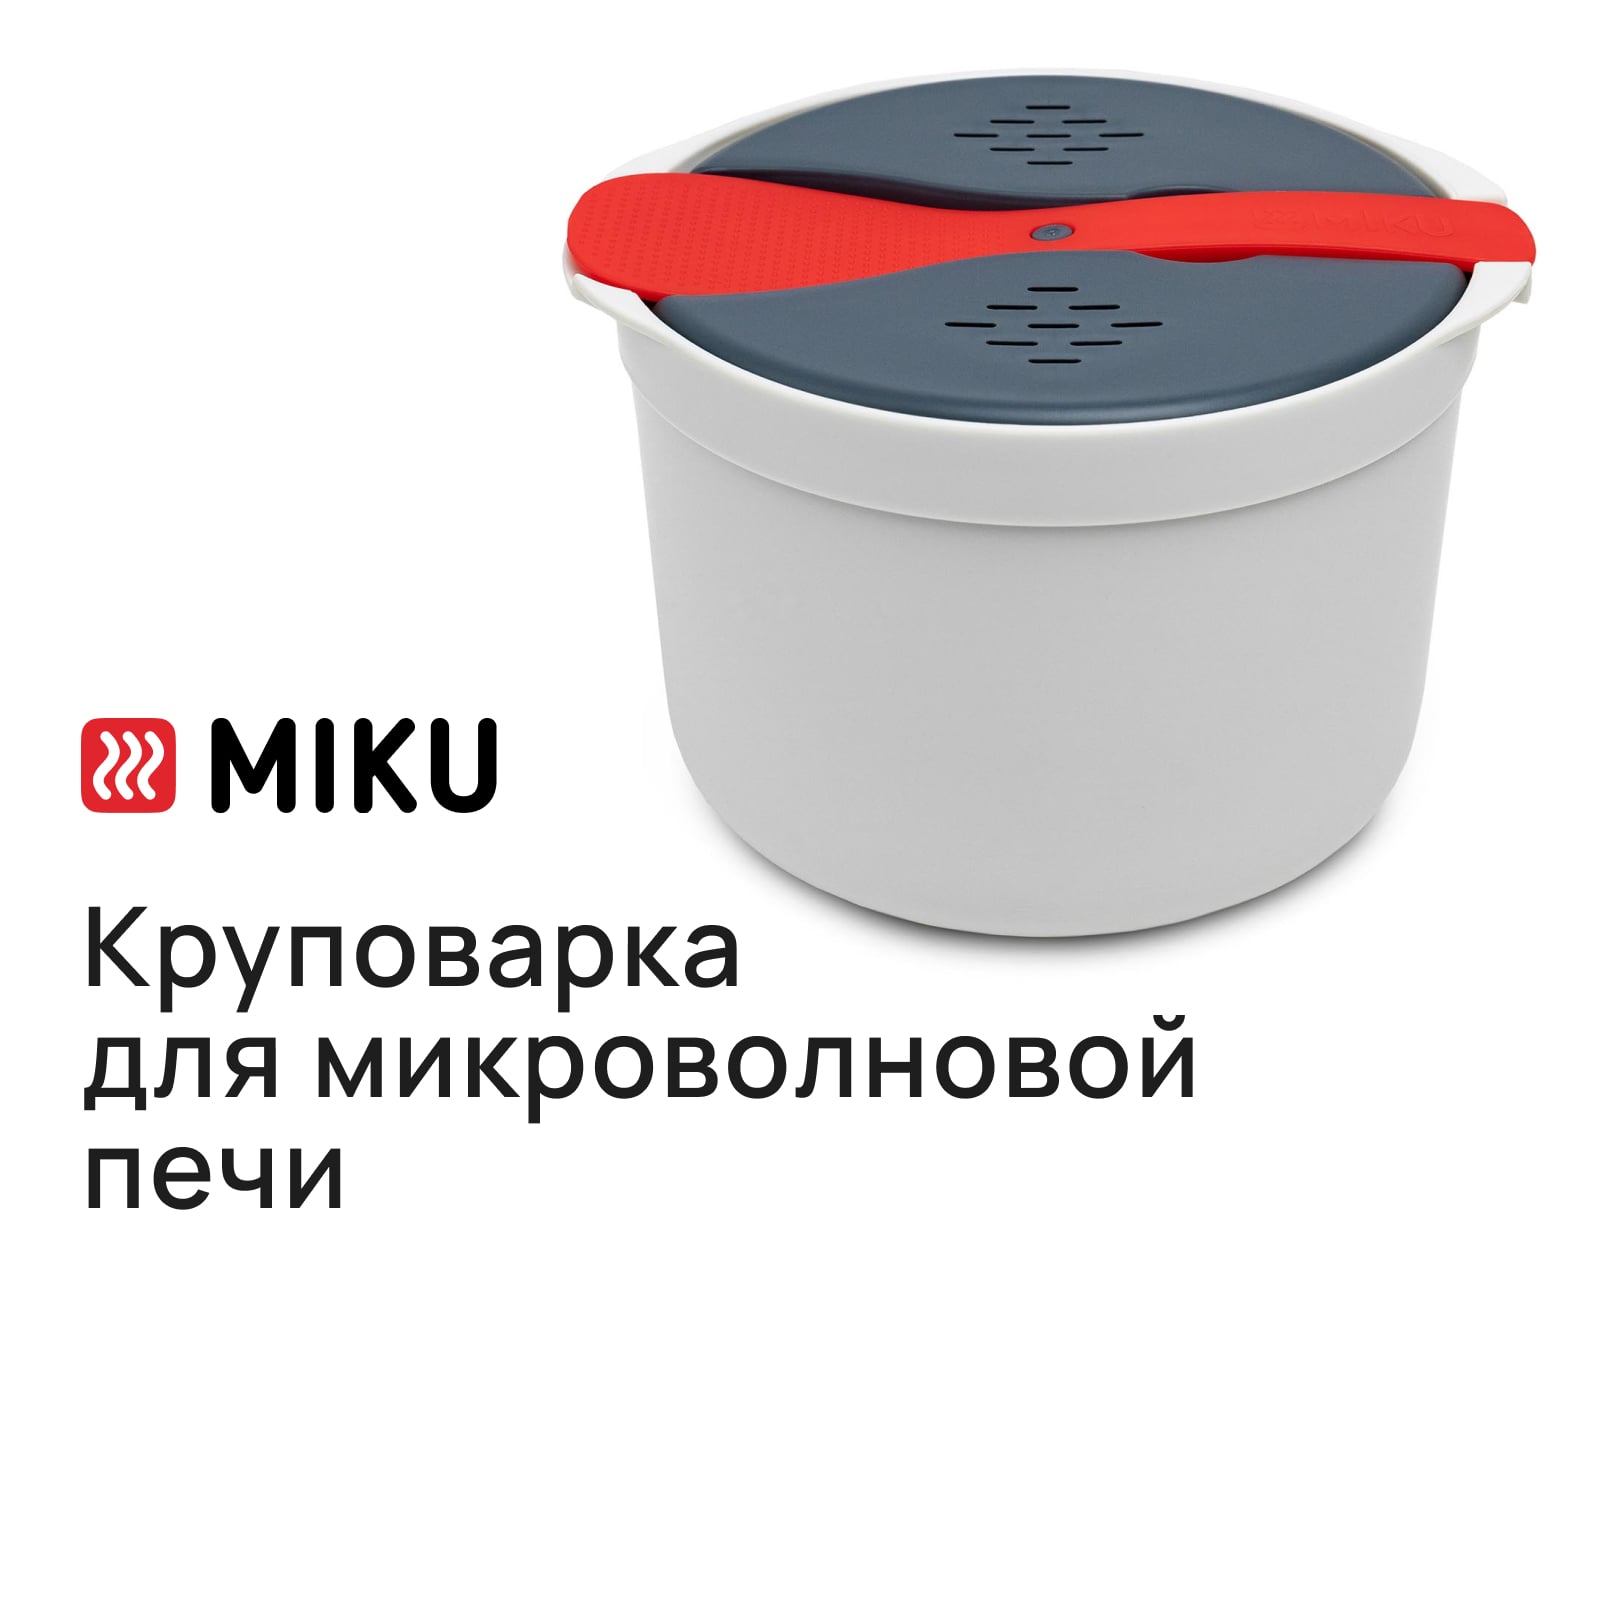 Круповарка MIKU для микроволновой печи купить в интернет-магазине, цены на Мегамаркет